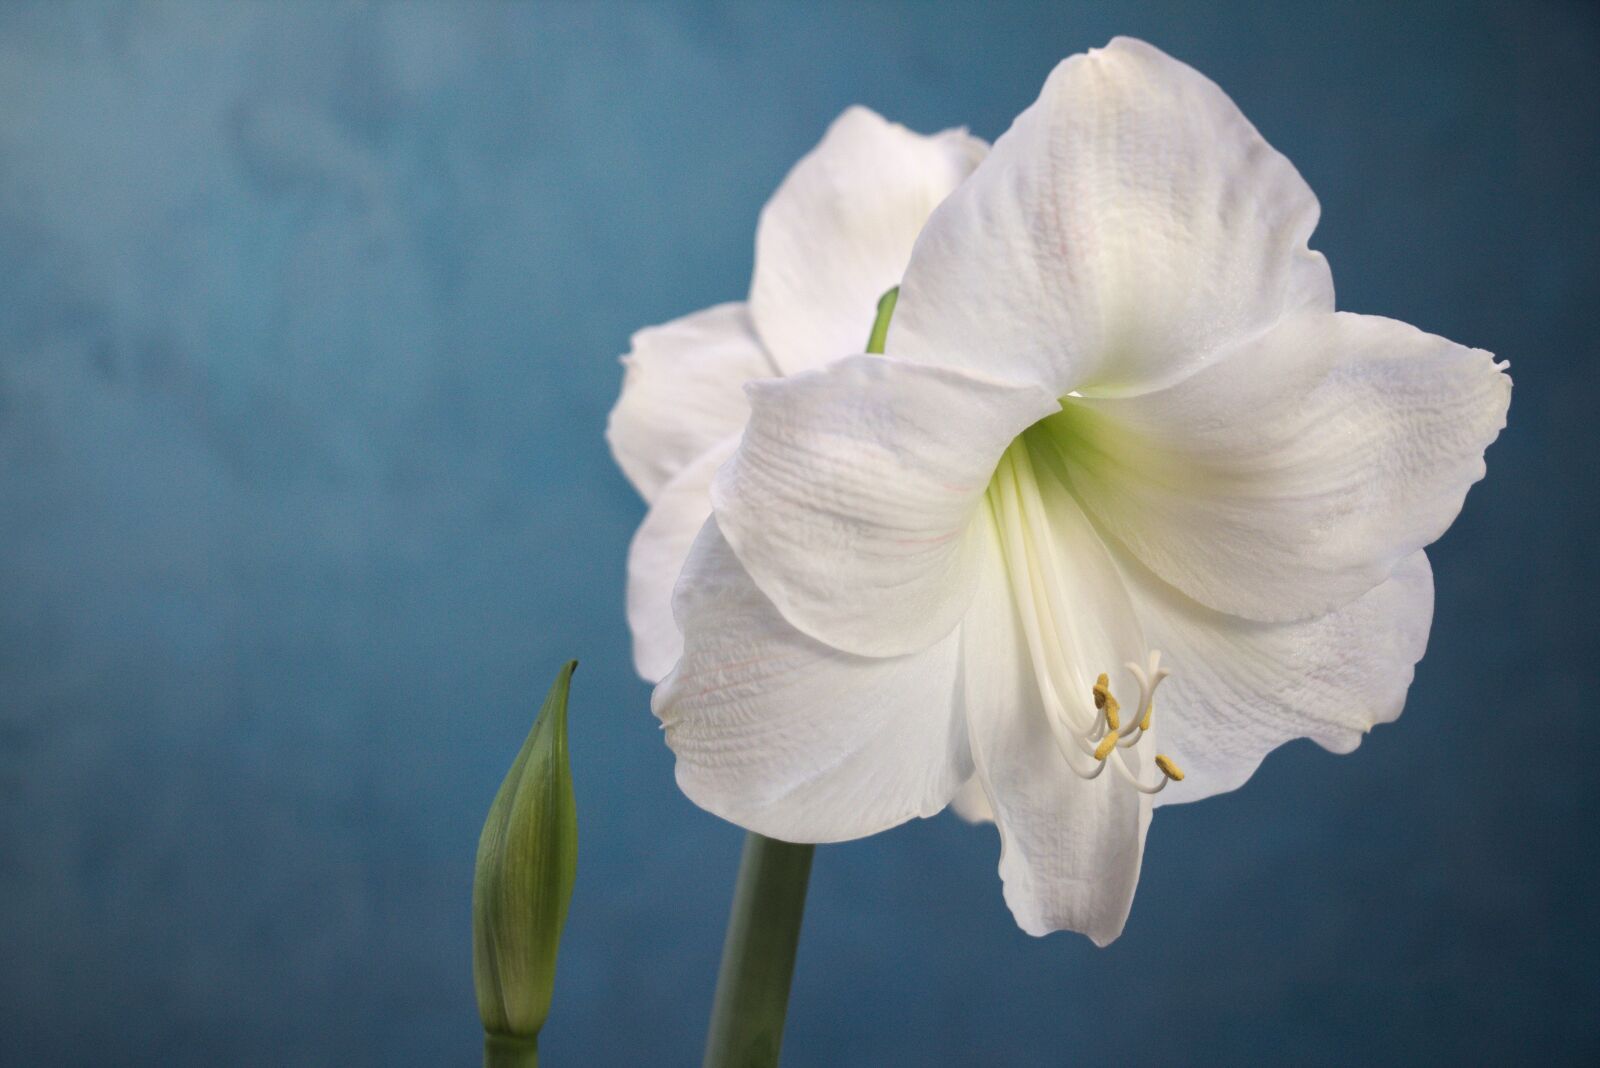 Canon EOS 750D (EOS Rebel T6i / EOS Kiss X8i) sample photo. Amaryllis, white, flower photography